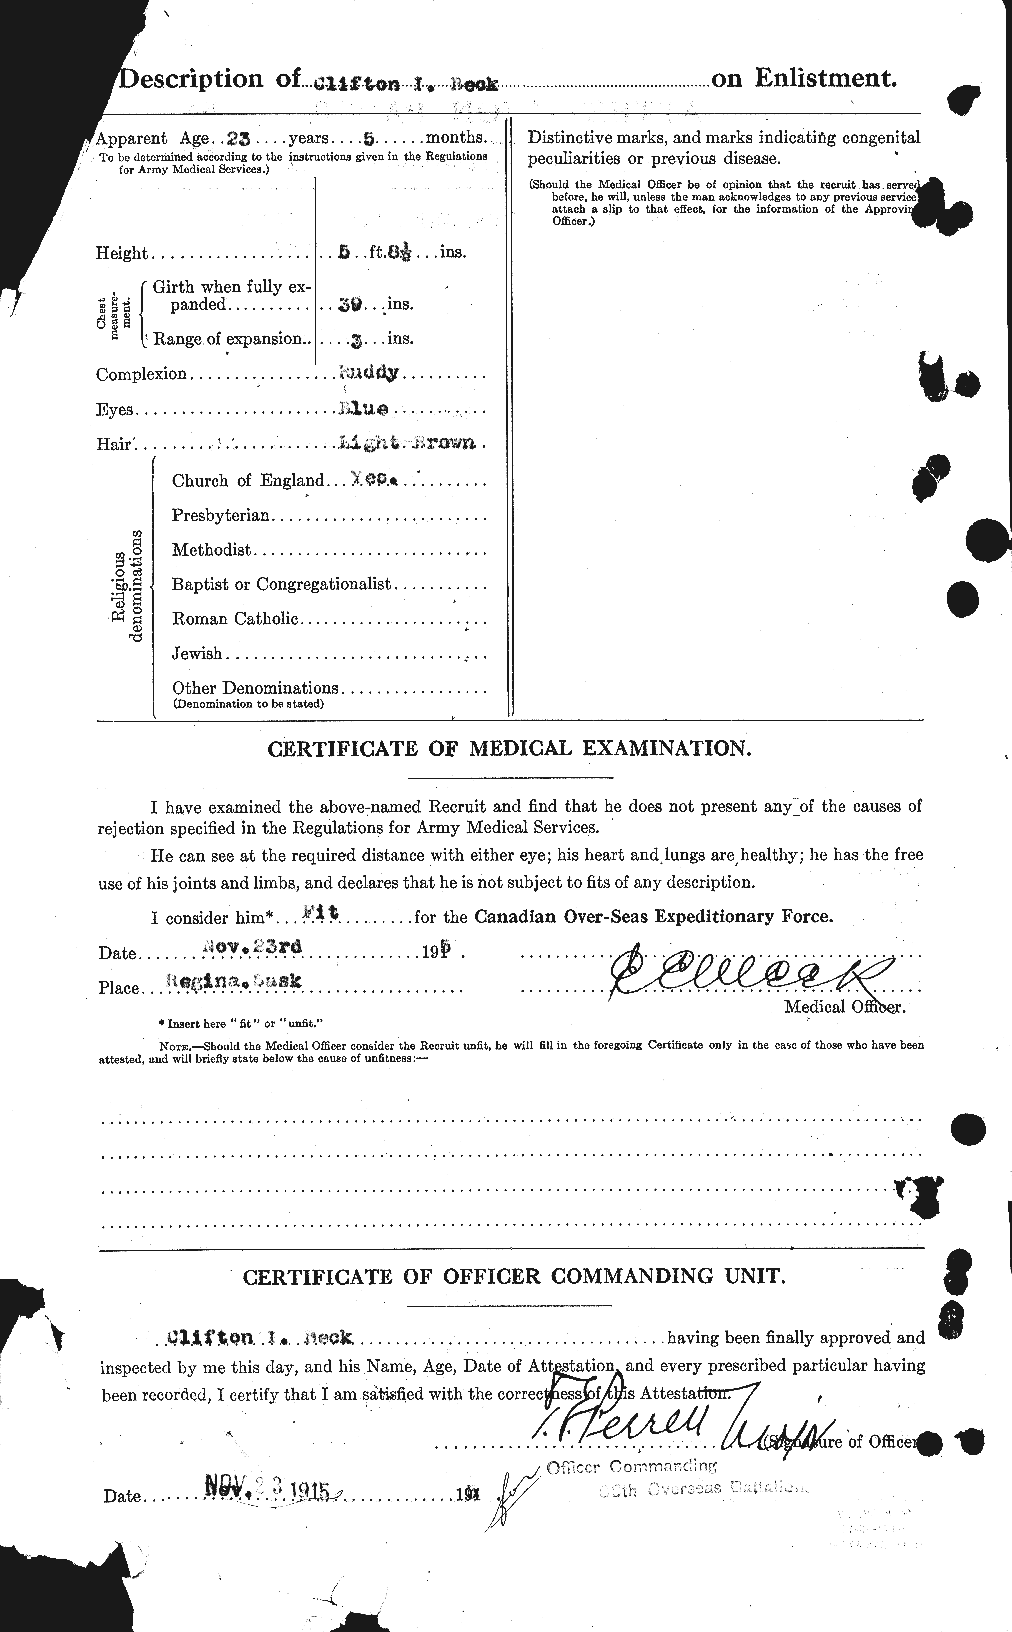 Dossiers du Personnel de la Première Guerre mondiale - CEC 232100b